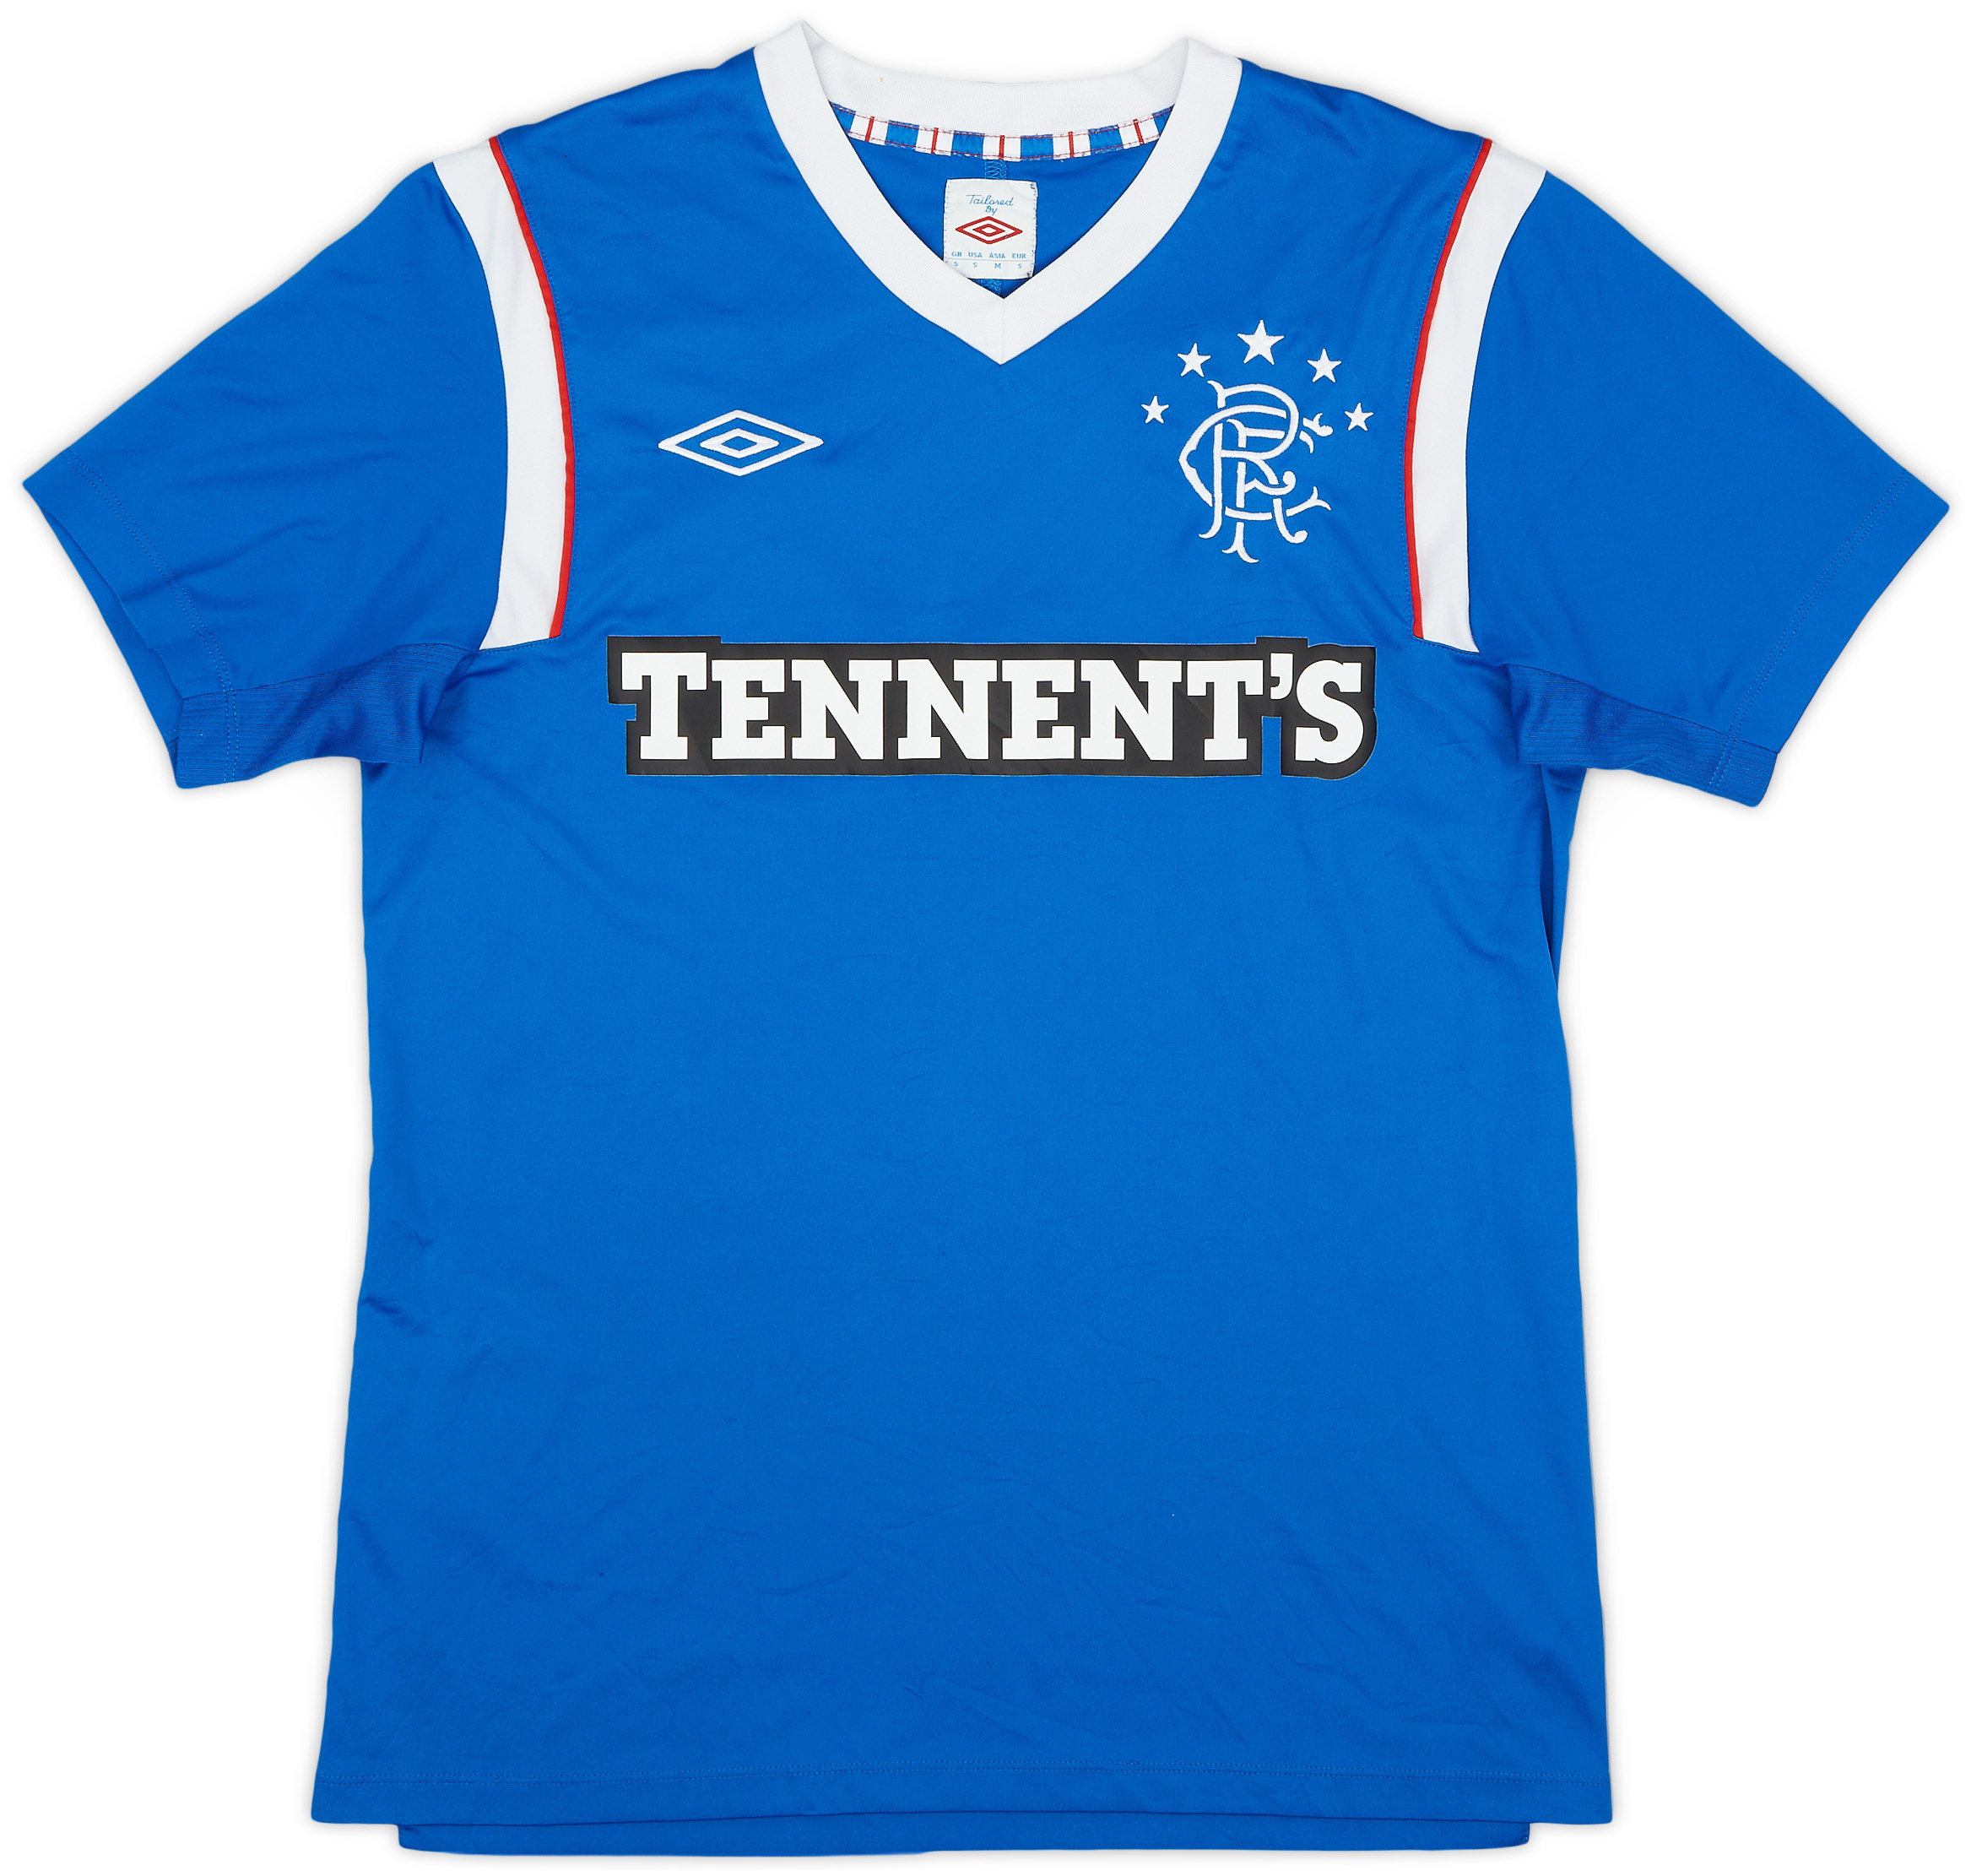 2011-12 Rangers Home Shirt - 9/10 - ()